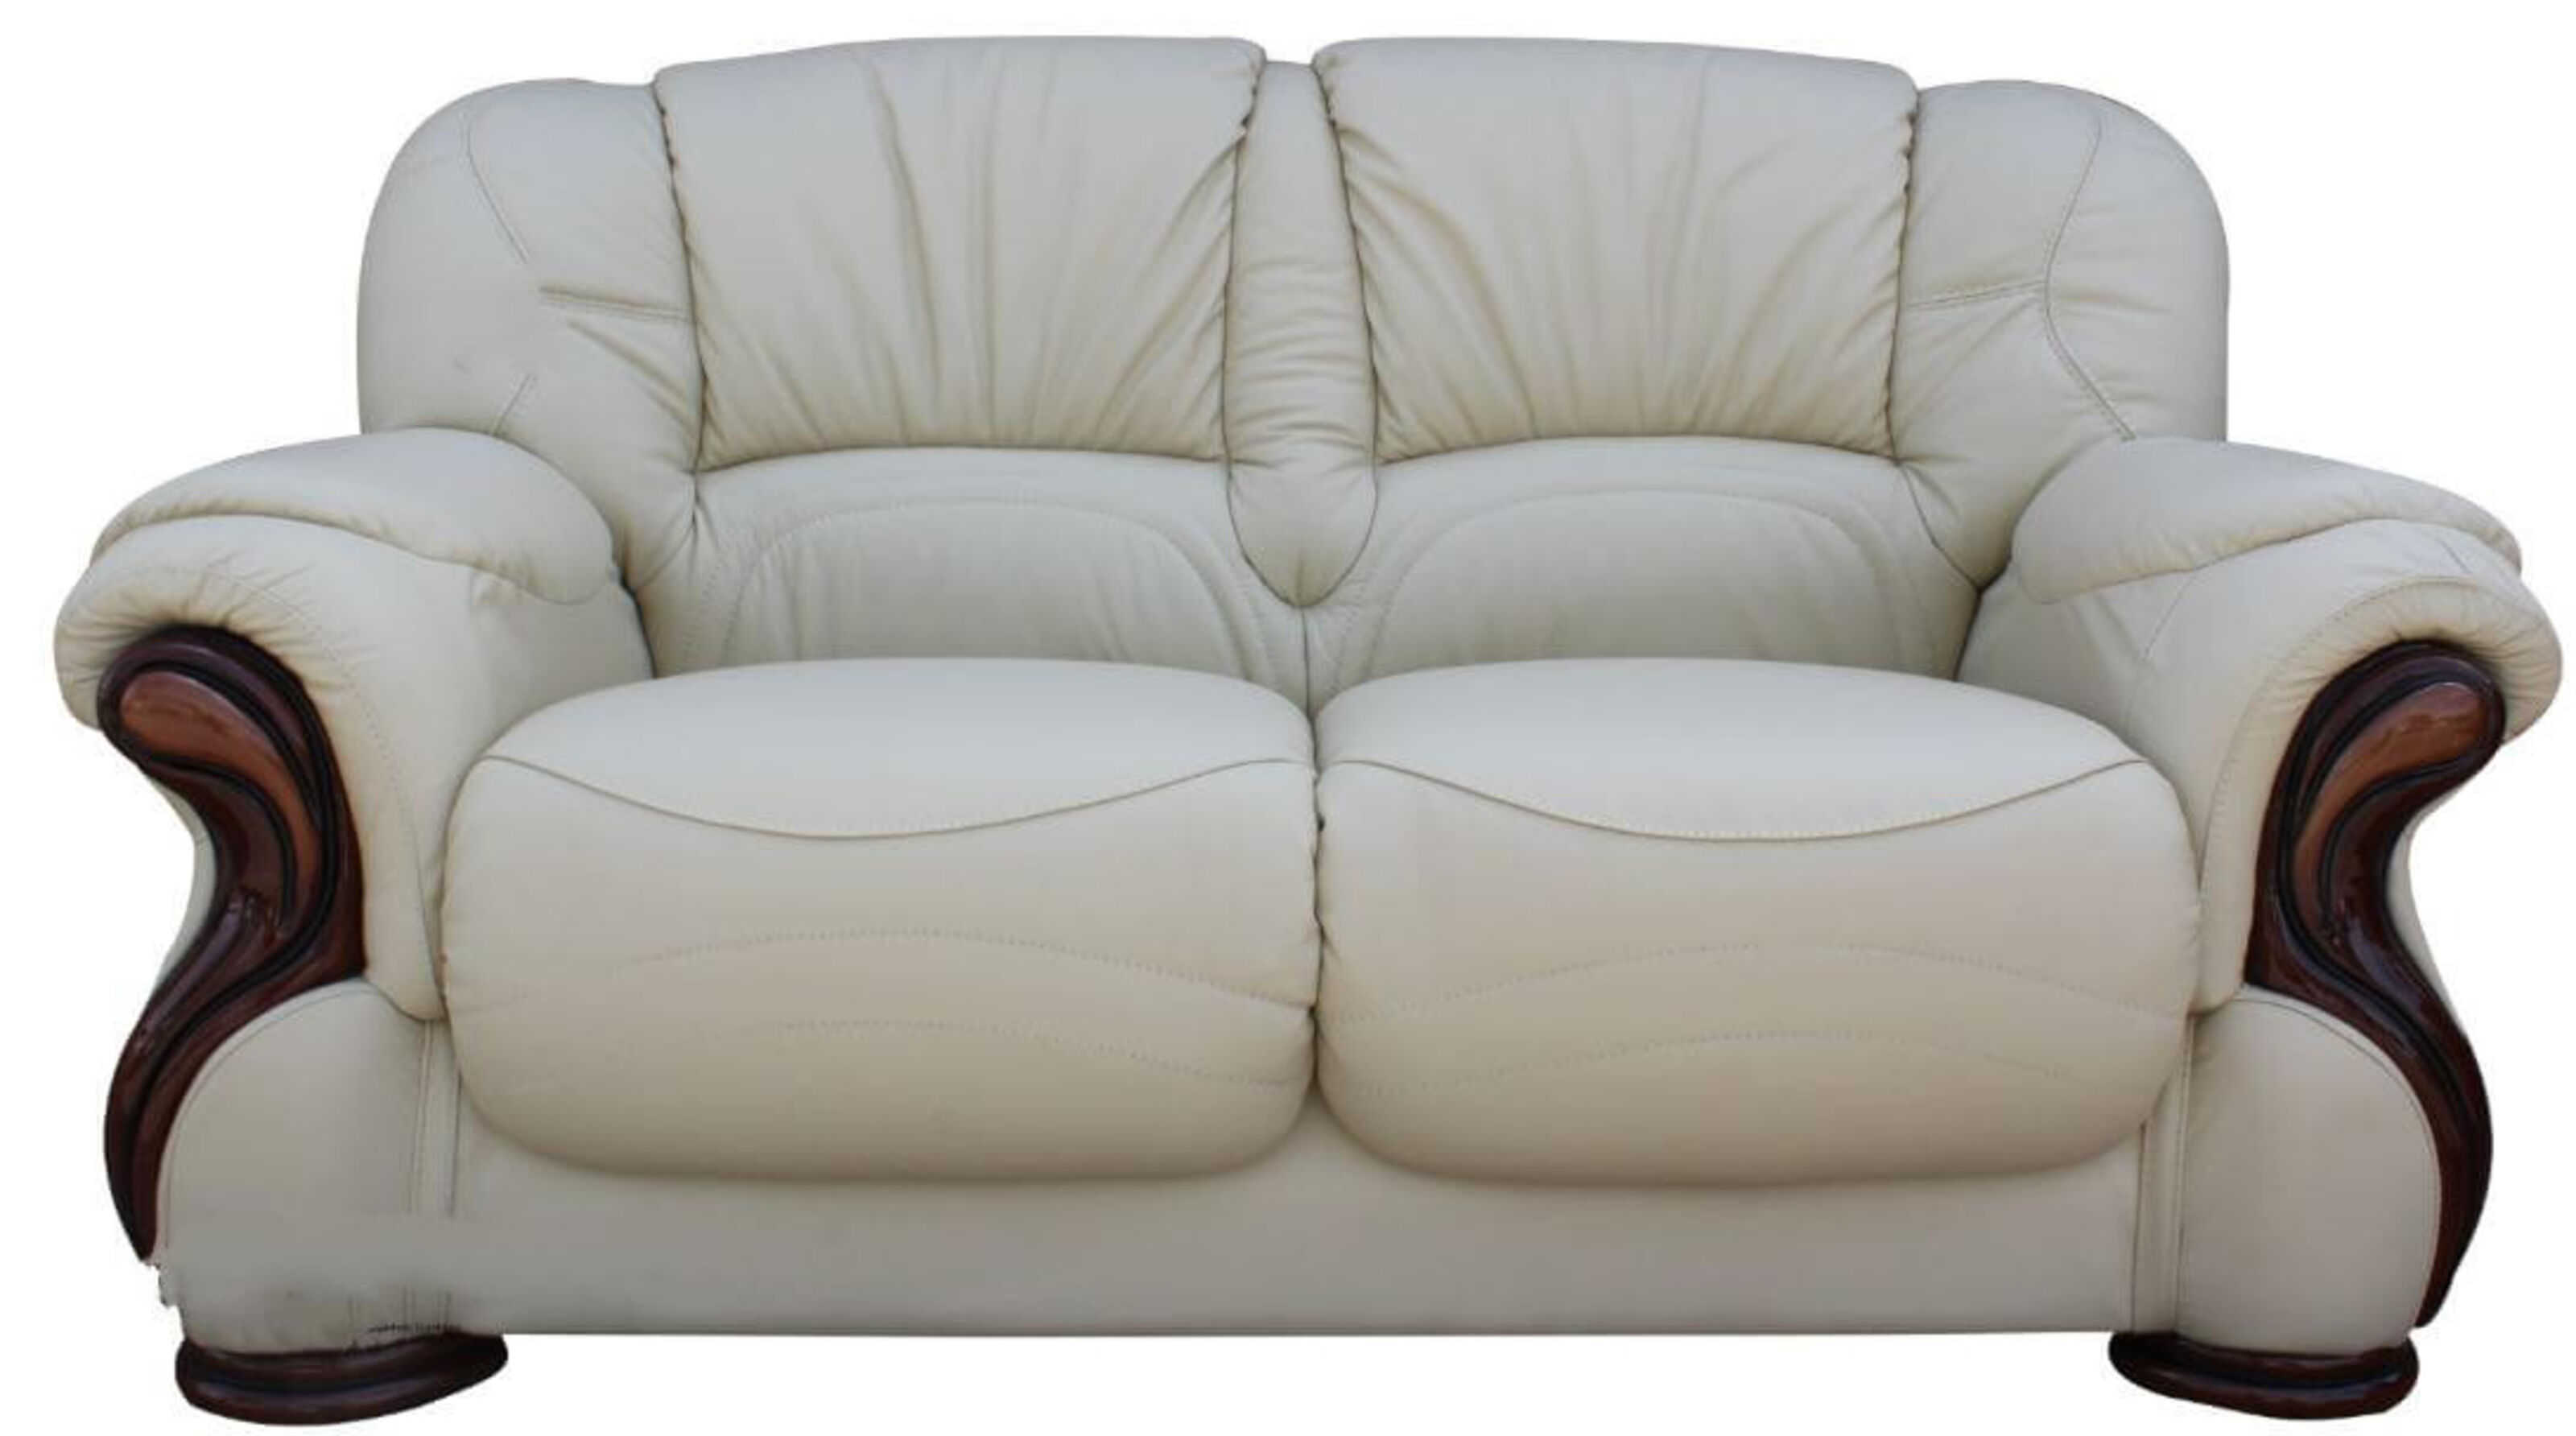 Susanna Italian Leather 2 Seater Sofa, Traditional Cream Leather Sofas